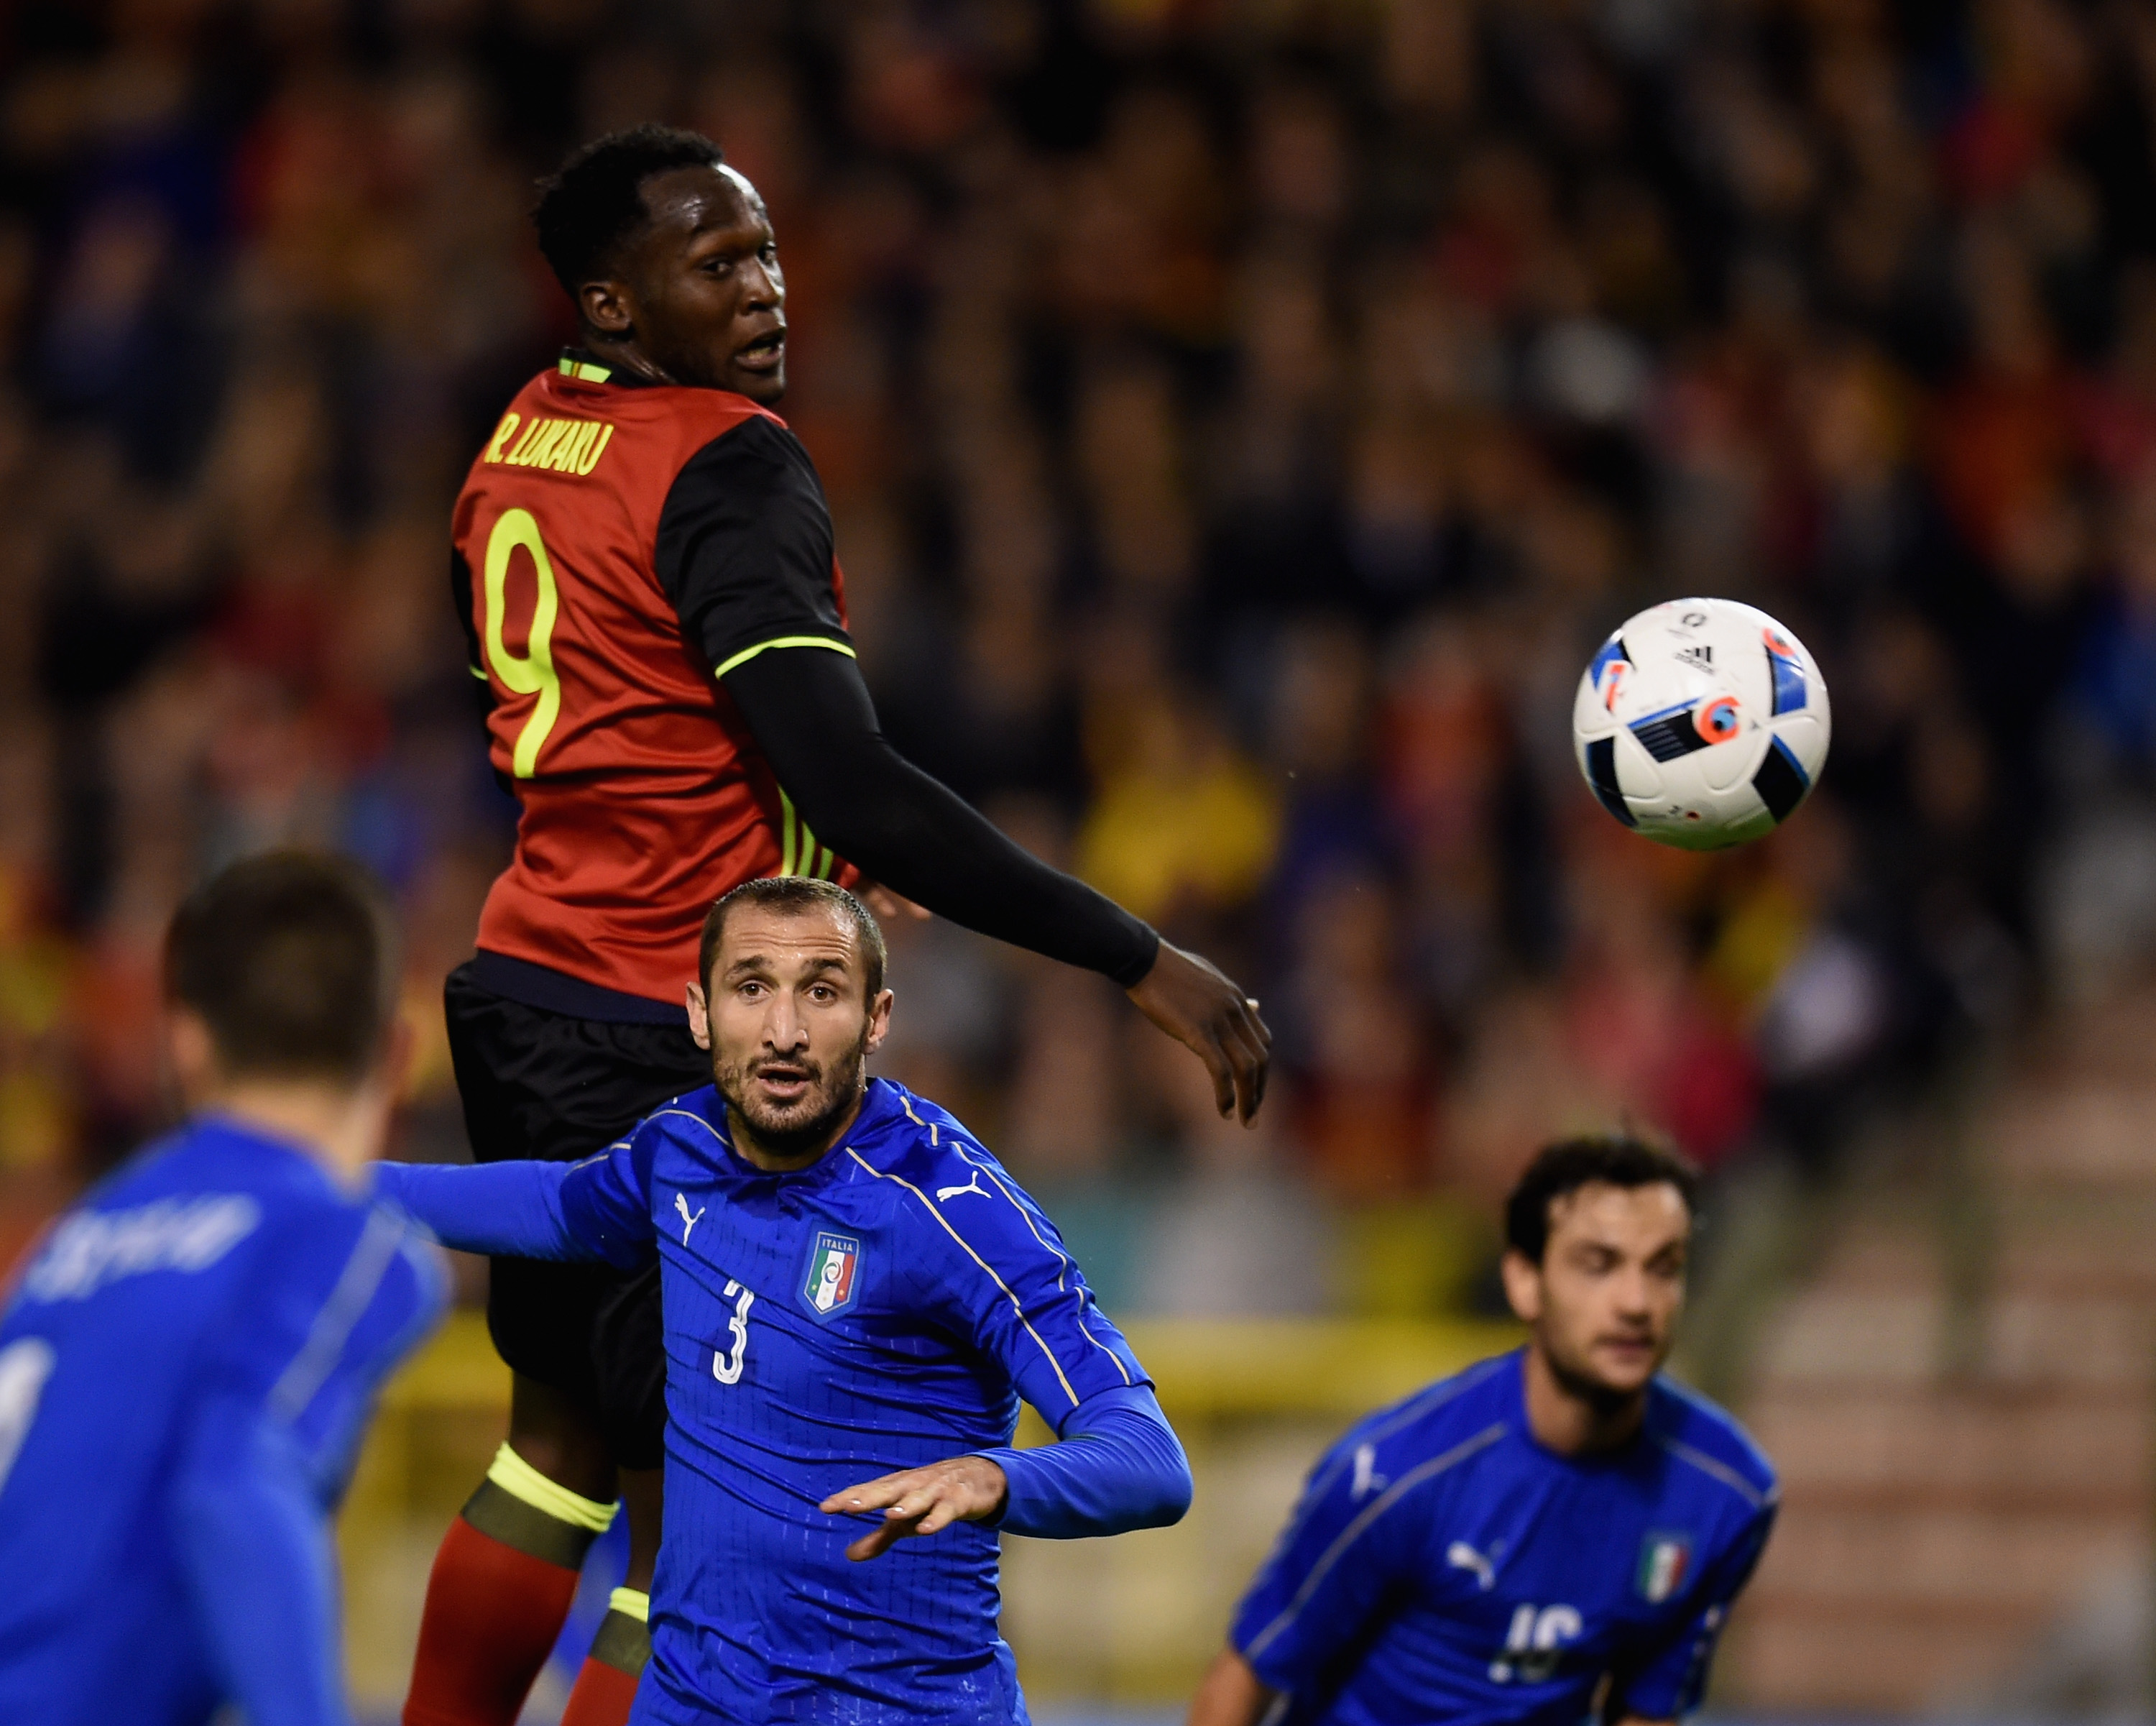 Belgium v Italy - International Friendly